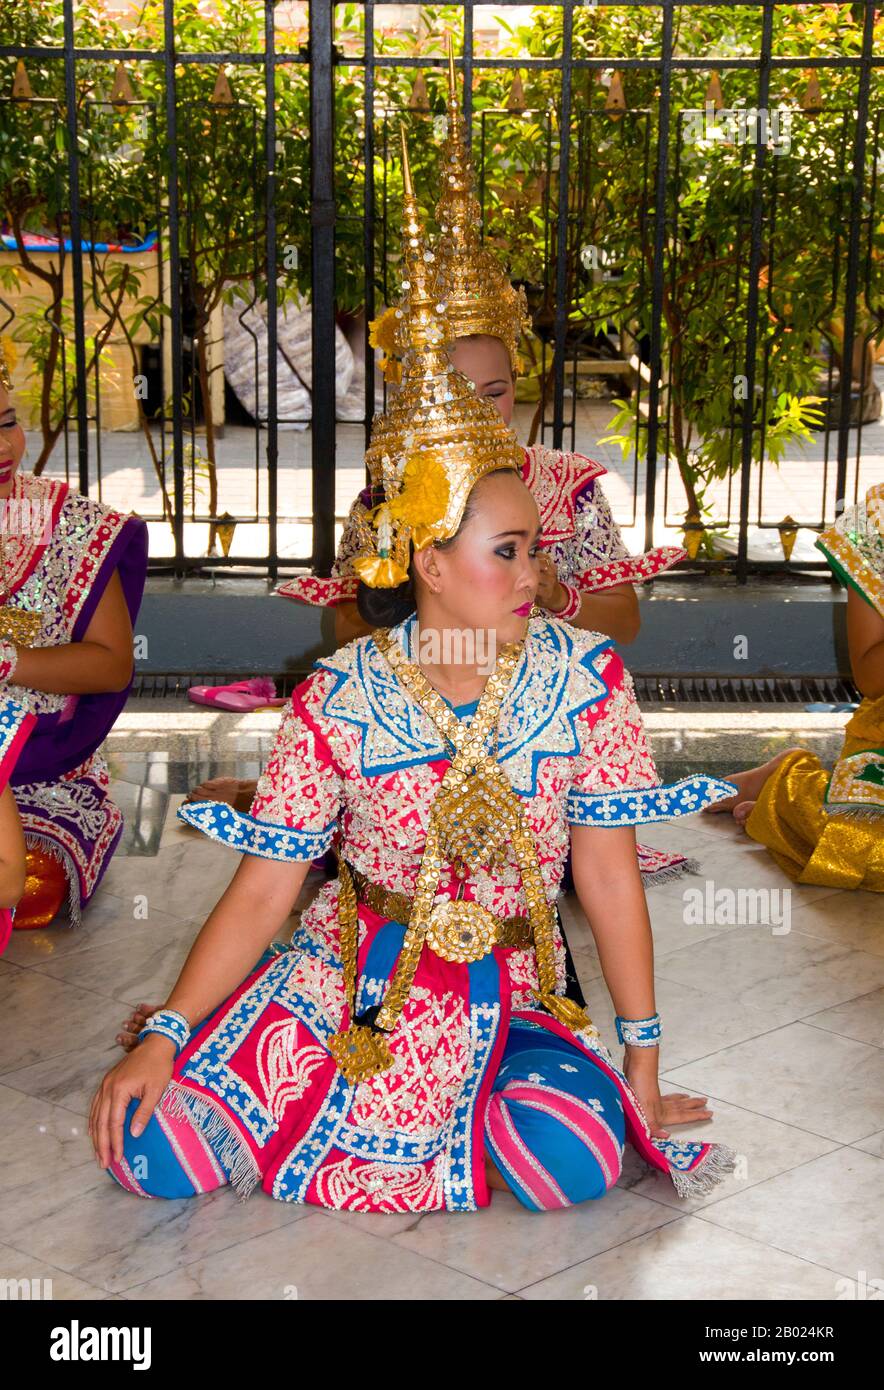 Thailand: Traditionelle thailändische Tänzer am Erawan-Schrein (San Phra Phrom), Bangkok. Der Erawan-Schrein, unter der Chit Lom Skytrain Station in Bangkok, repräsentiert den vierköpfigen hinduistischen gott der Schöpfung, Brahma, und wurde 1956 nach einer Reihe tödlicher Unglücksfälle errichtet, die den Bau des ursprünglichen Erawan Hotels erlitten hatten. Traditionelle thailändische Tänzer, die sich dauerhaft am Schrein befinden, werden angeheuert, um von Gläubigen zu tanzen, als Gegenleistung dafür, dass sie ihre Gebete am Schrein erhört haben. Stockfoto